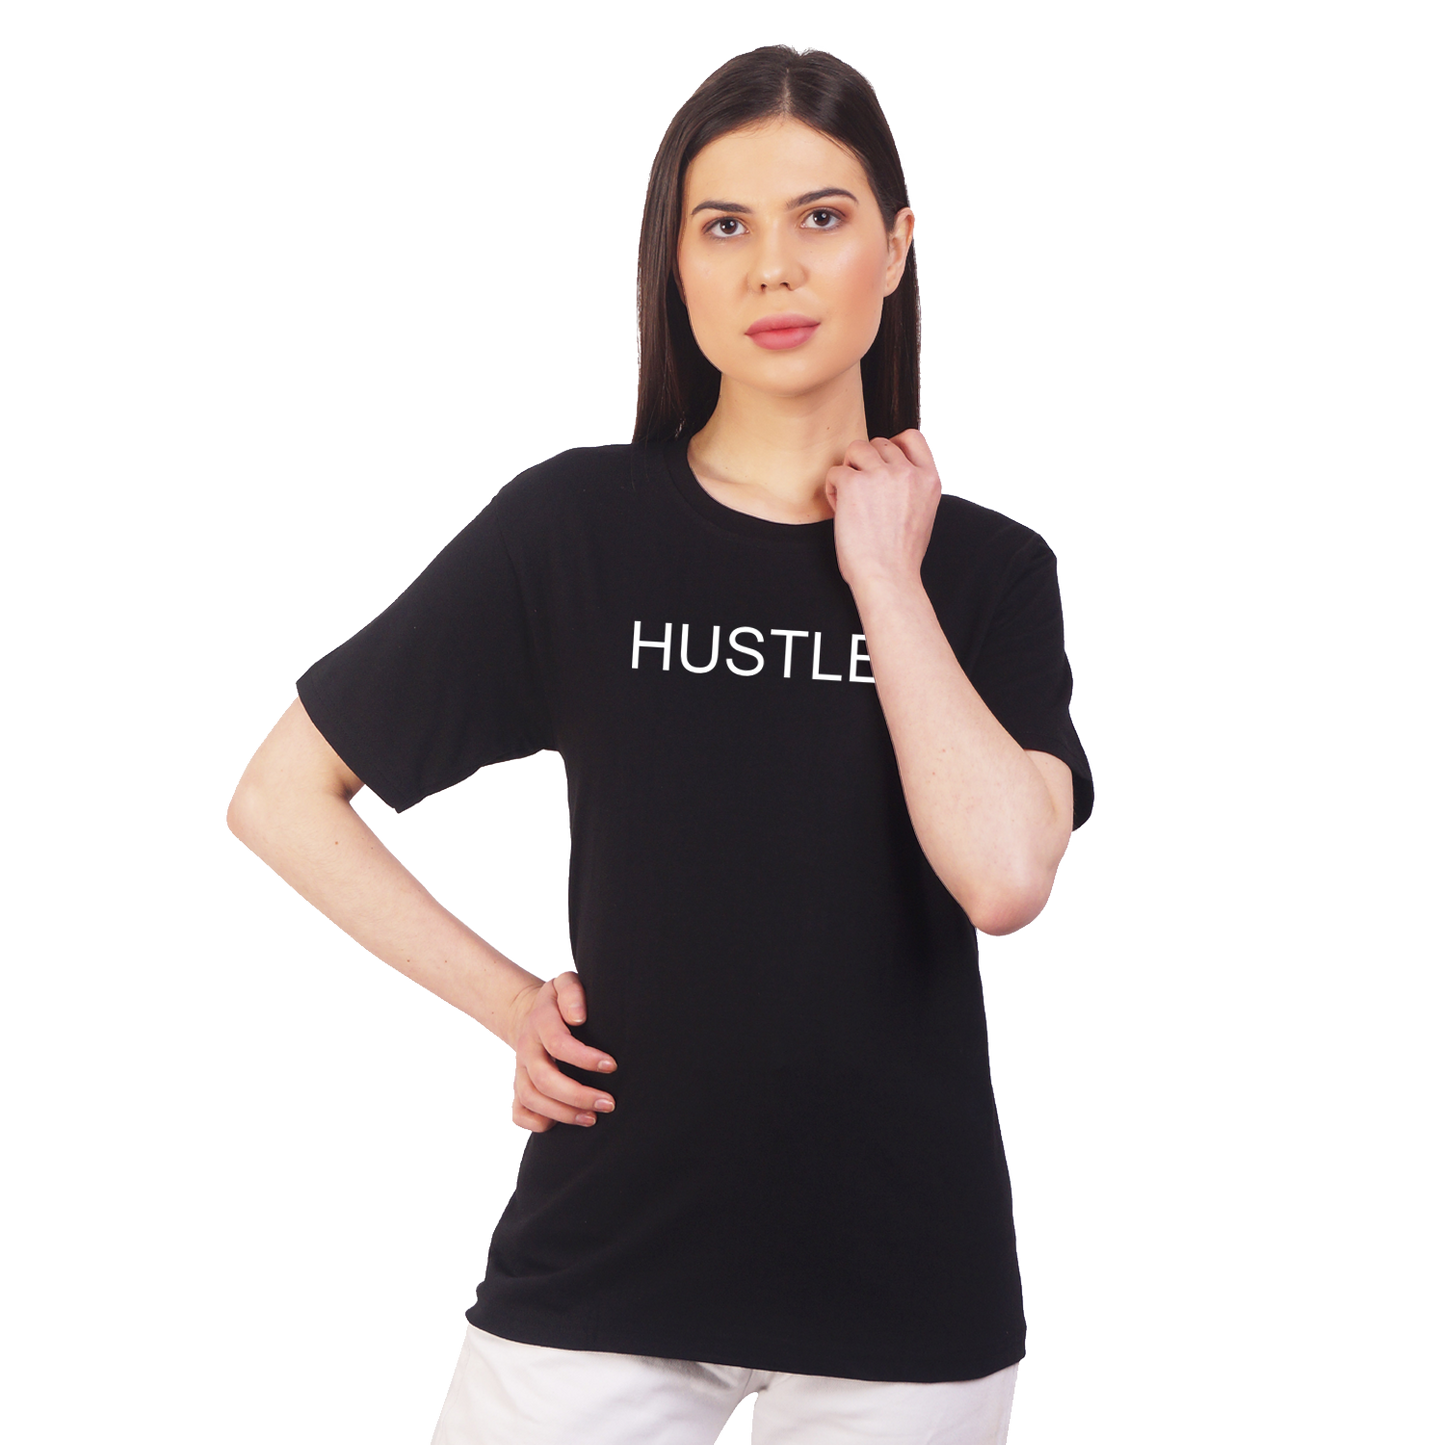 Hustler Cotton T-shirt | T050